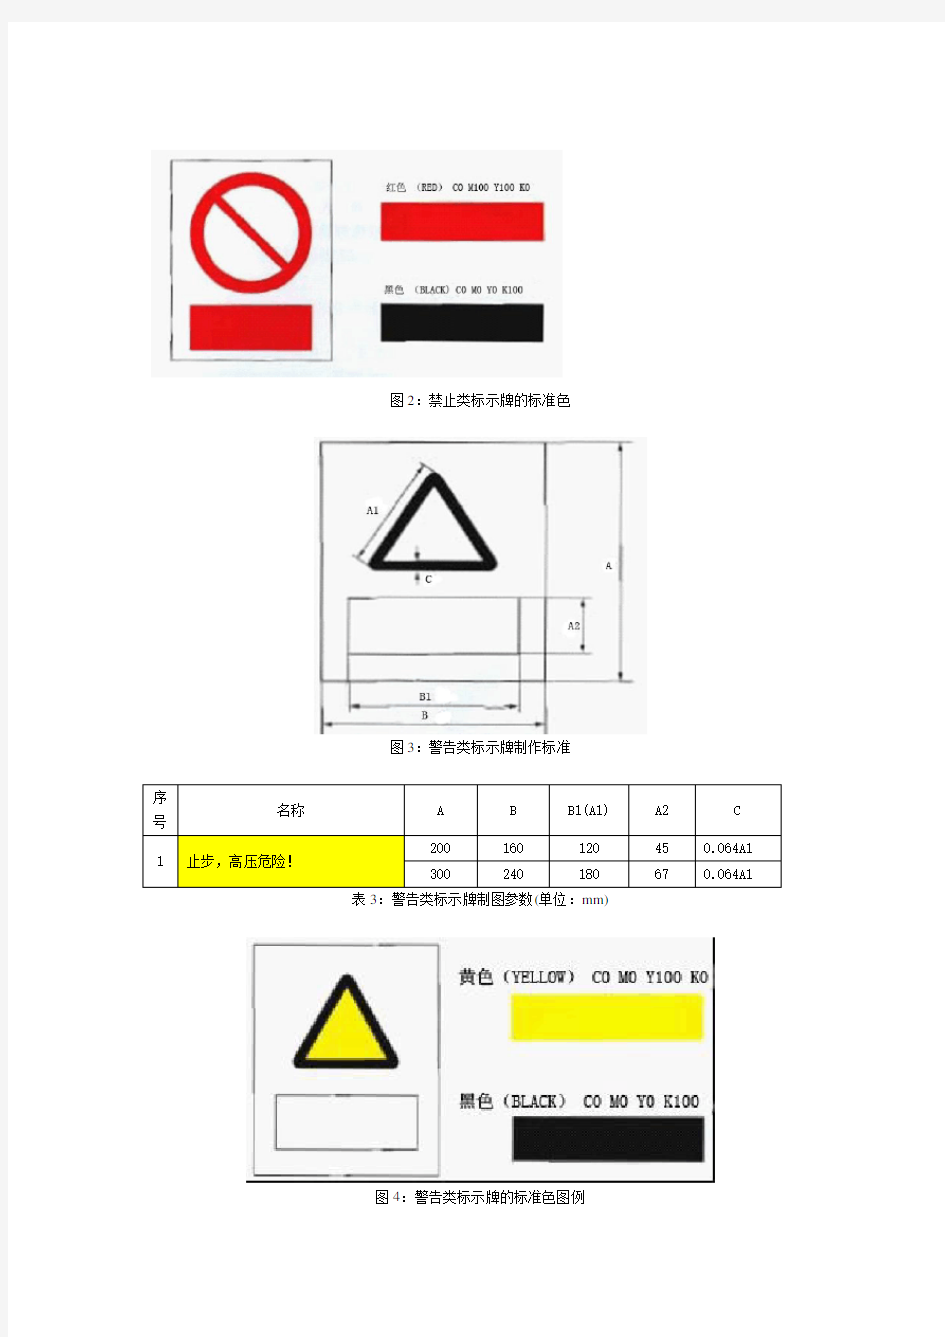 电力行业安全标识牌的样式以及尺寸